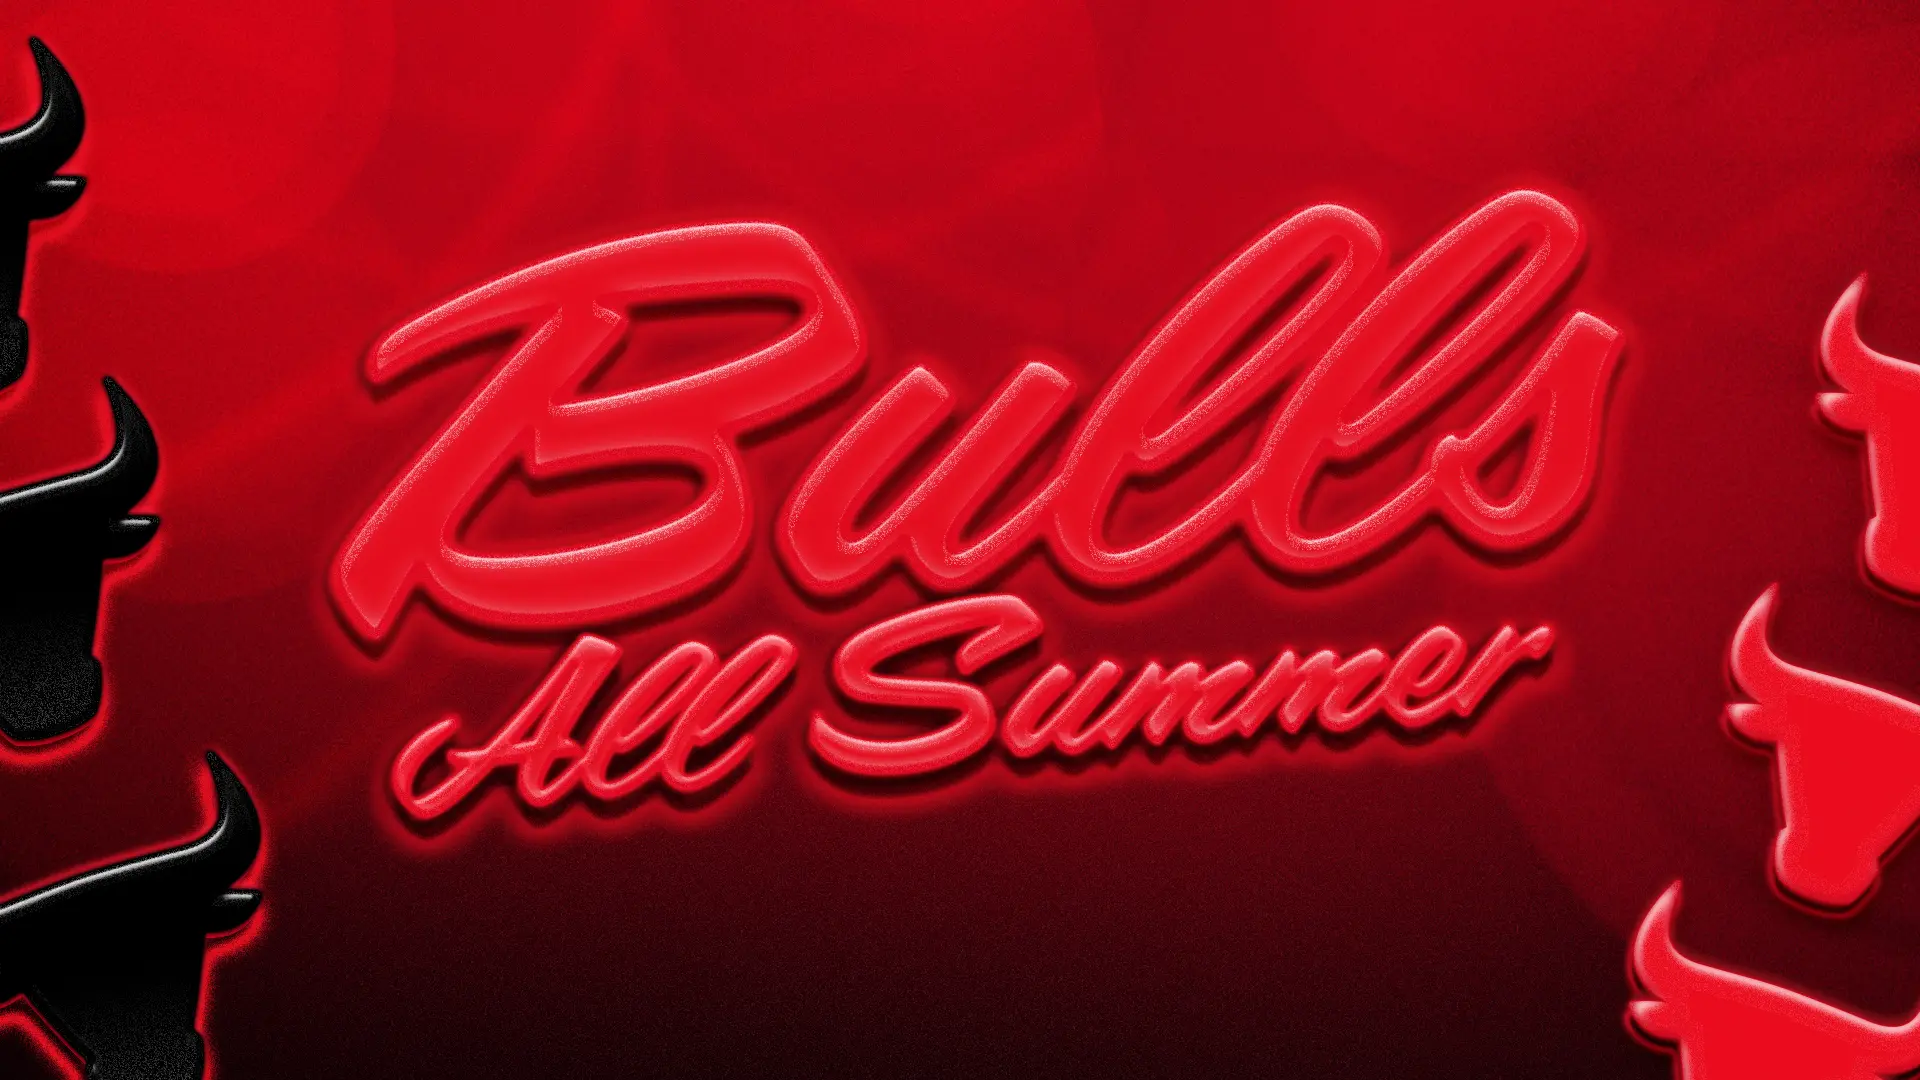 Bulls All Summer